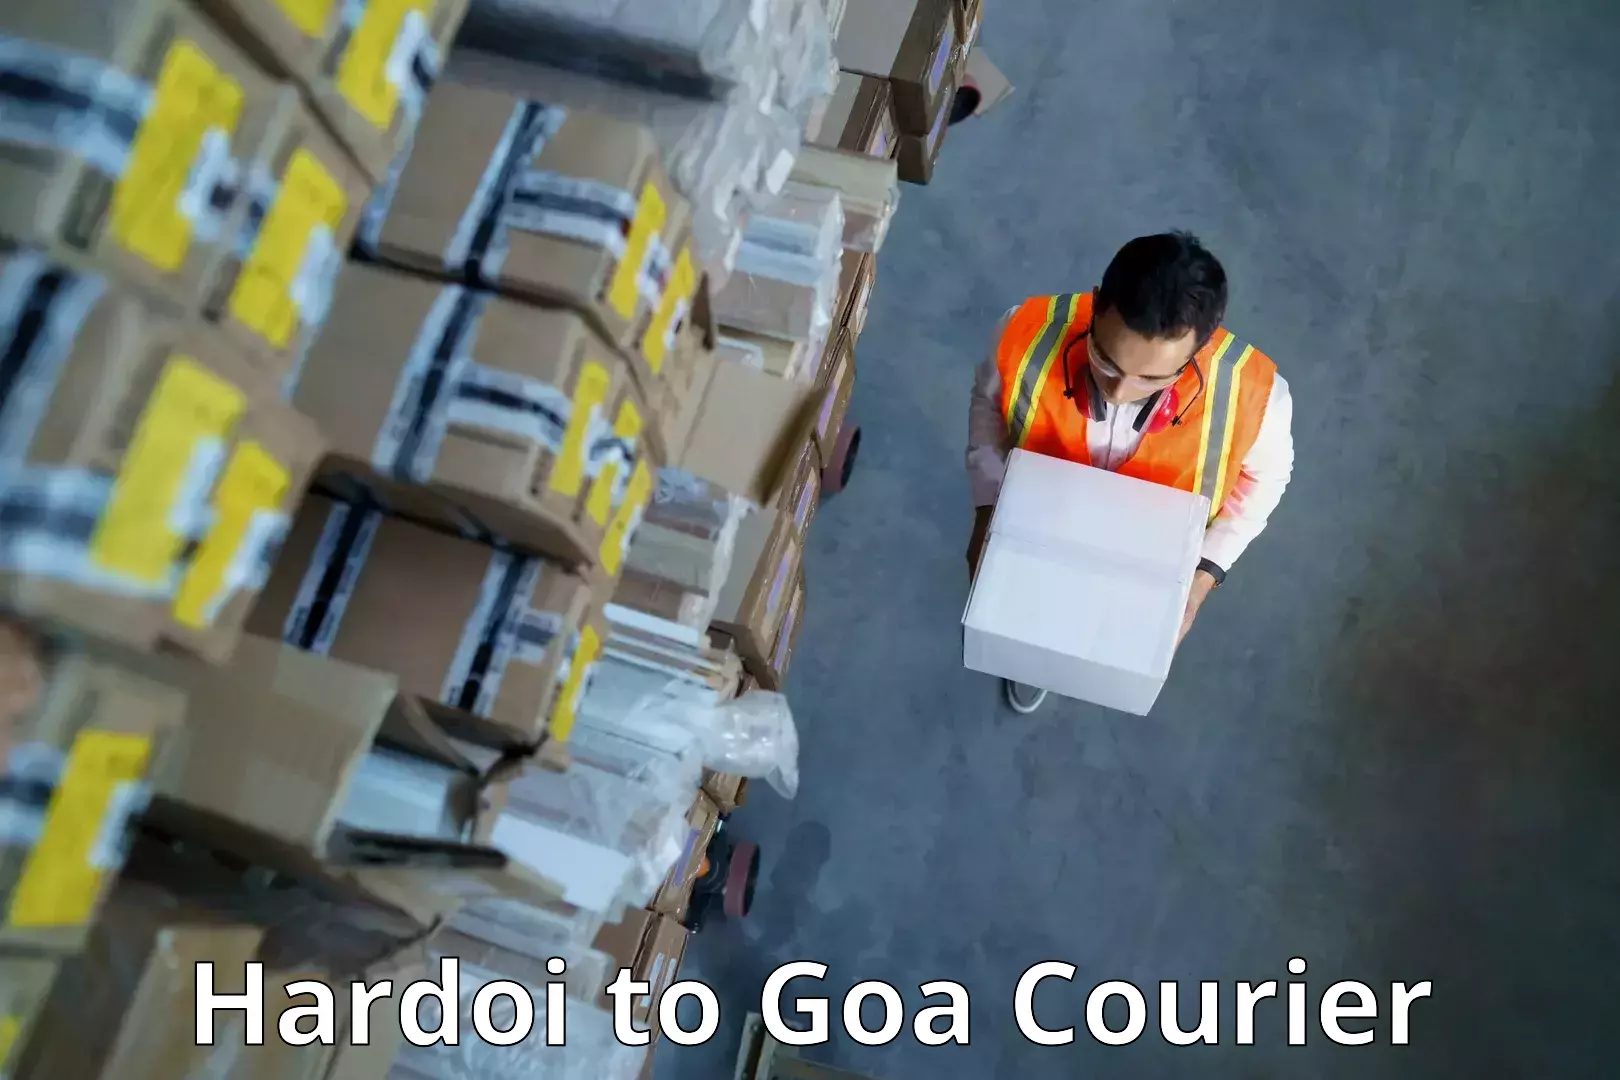 Reliable courier service Hardoi to Vasco da Gama